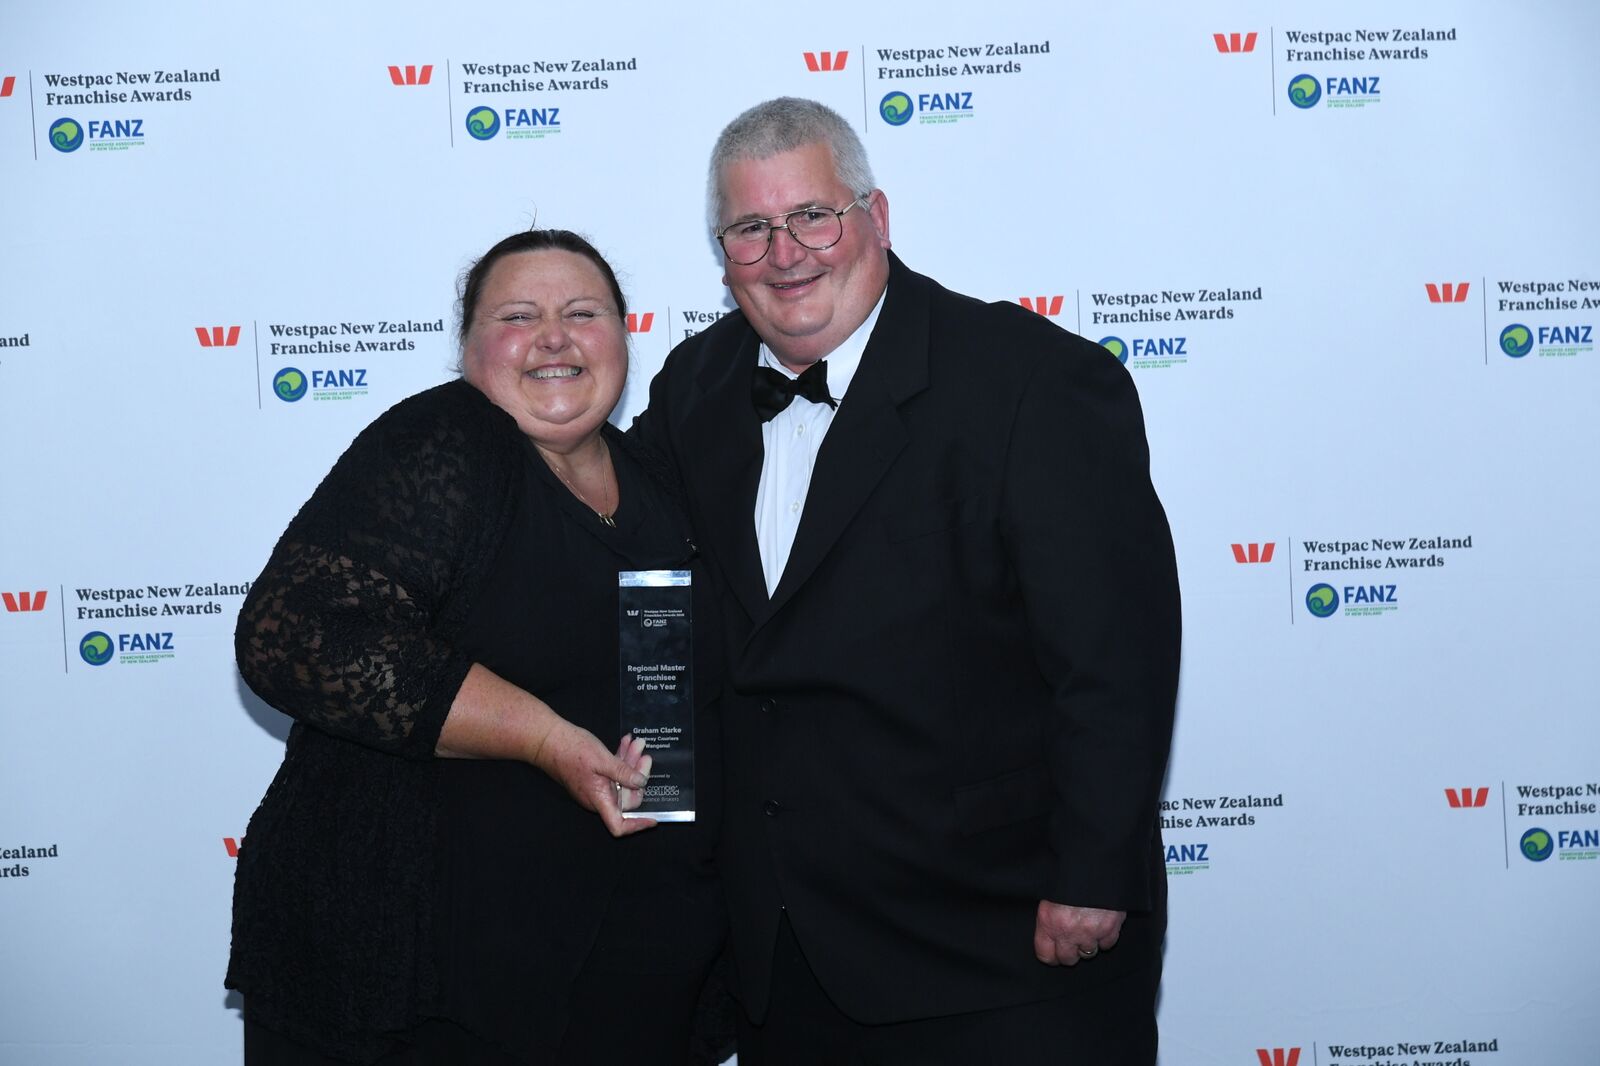 Fastway Couriers Wanganui win New Zealand Franchise Award